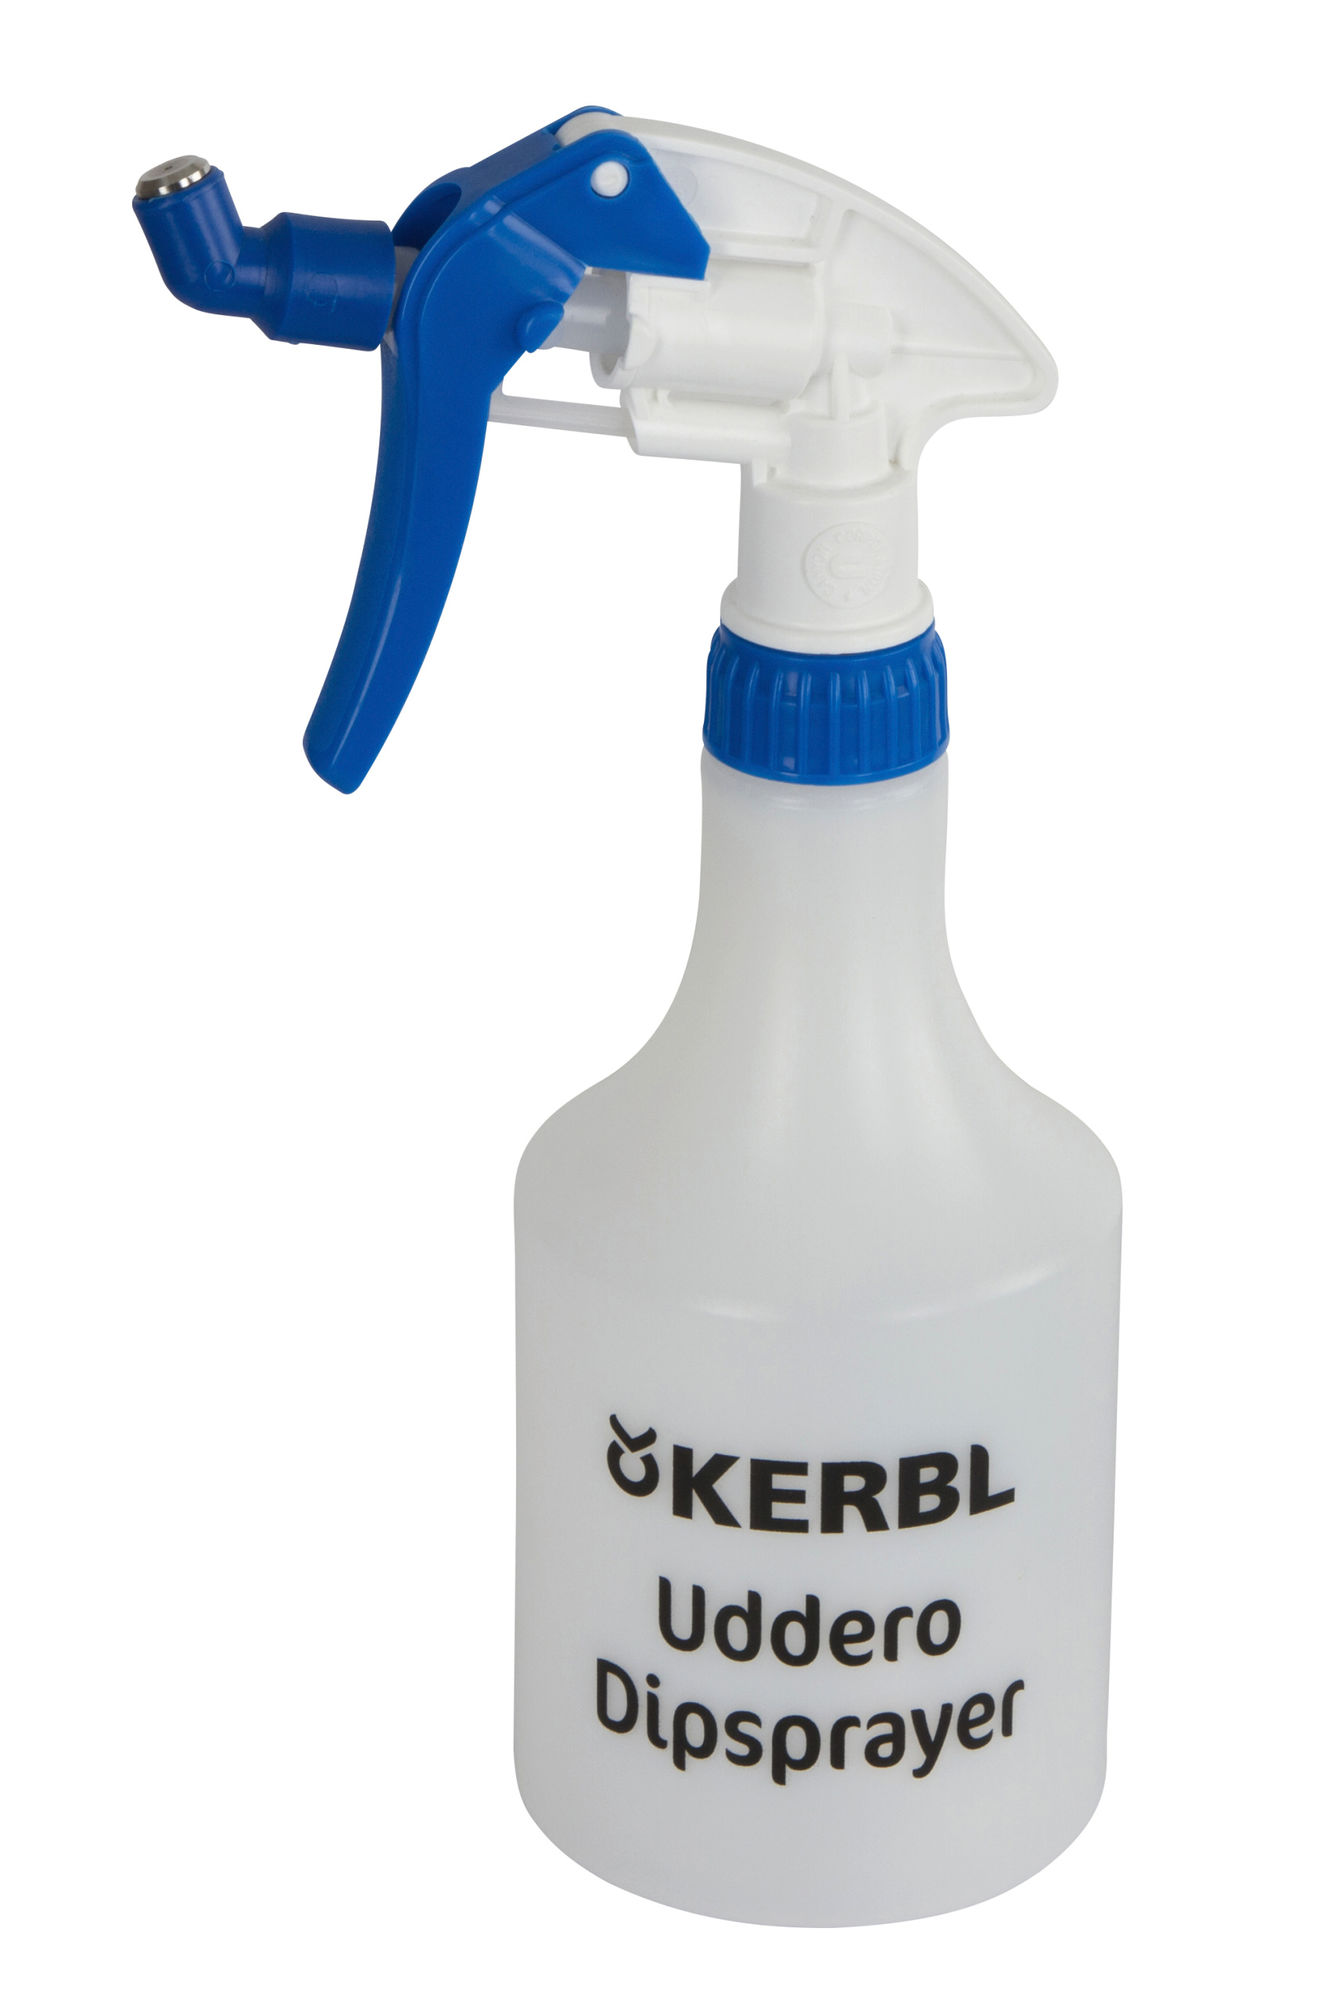 Dippsprüher Uddero Sprayer mit Metalldüse, 500 ml, chemikalienbeständig